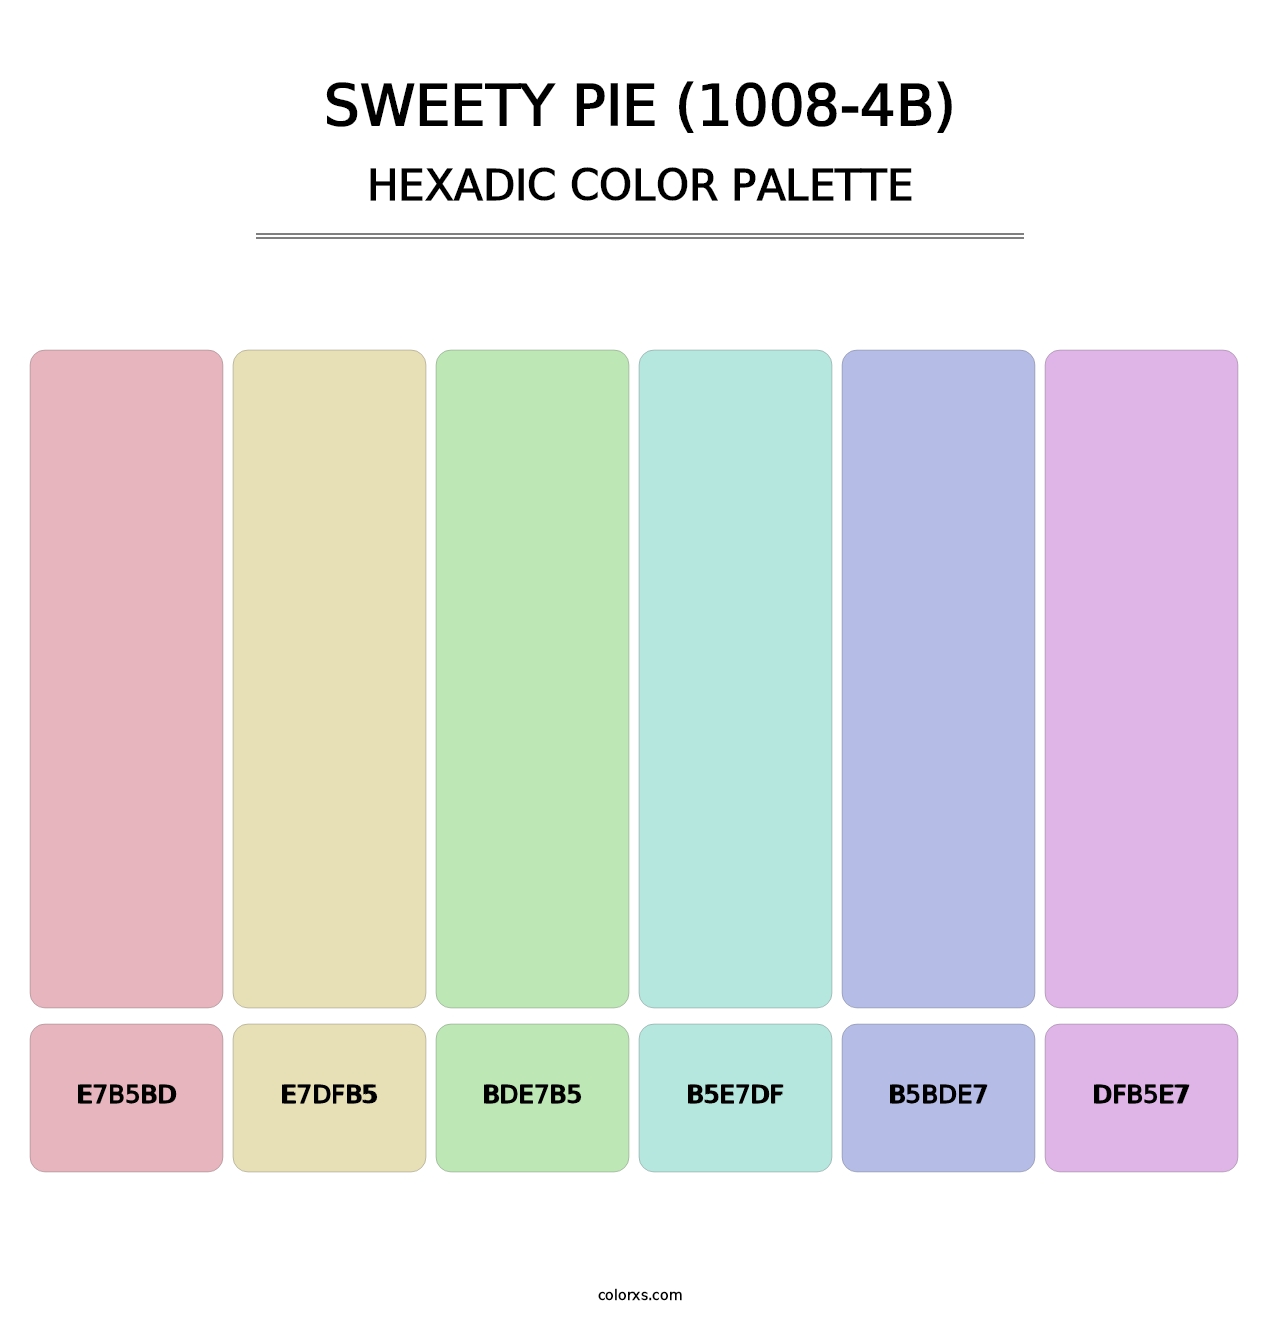 Sweety Pie (1008-4B) - Hexadic Color Palette